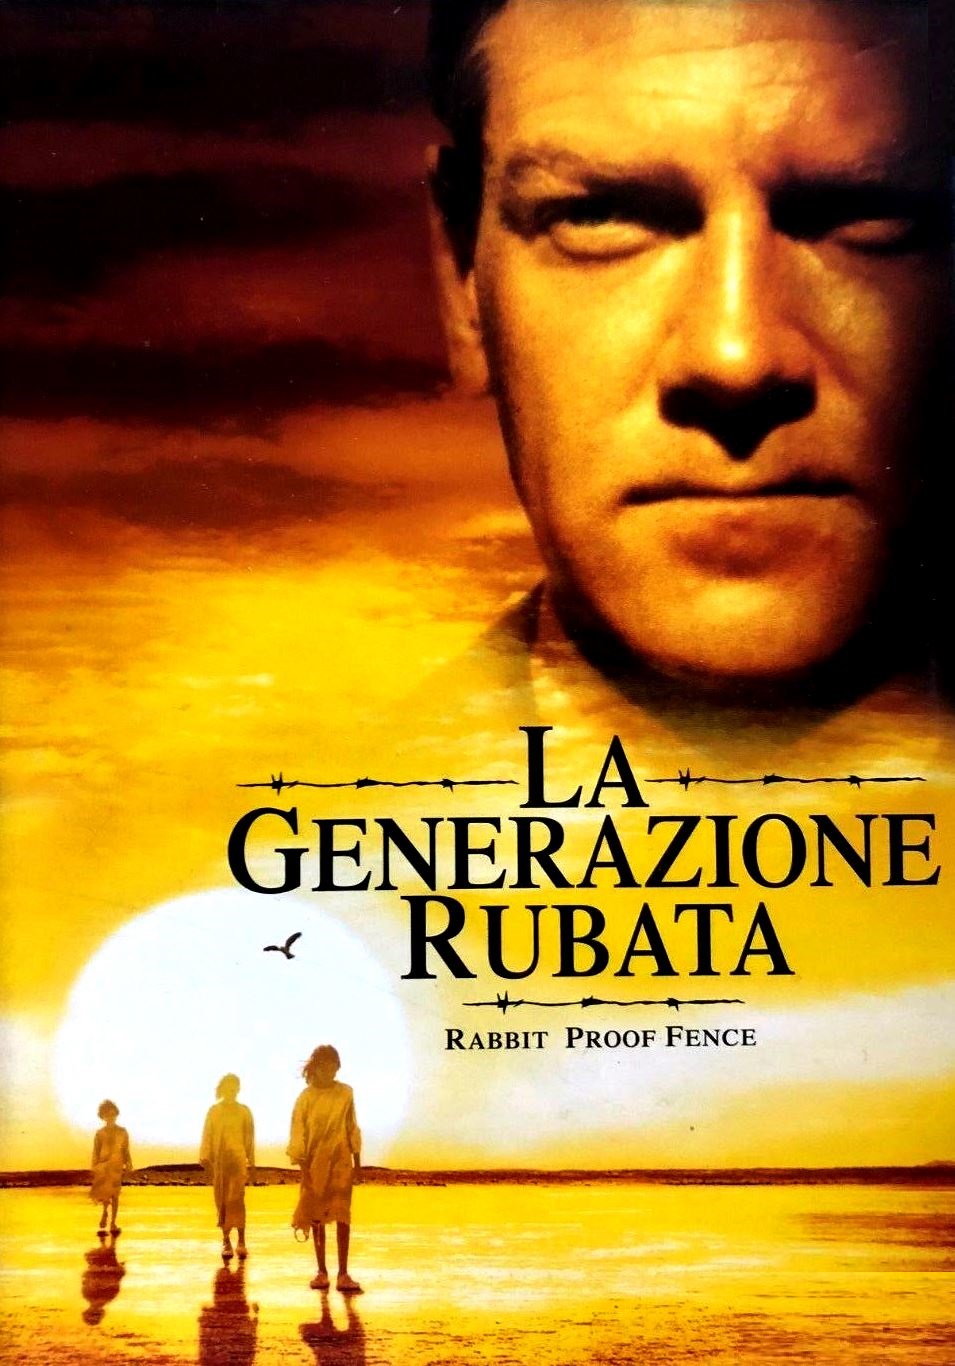 La generazione rubata [HD] (2002)